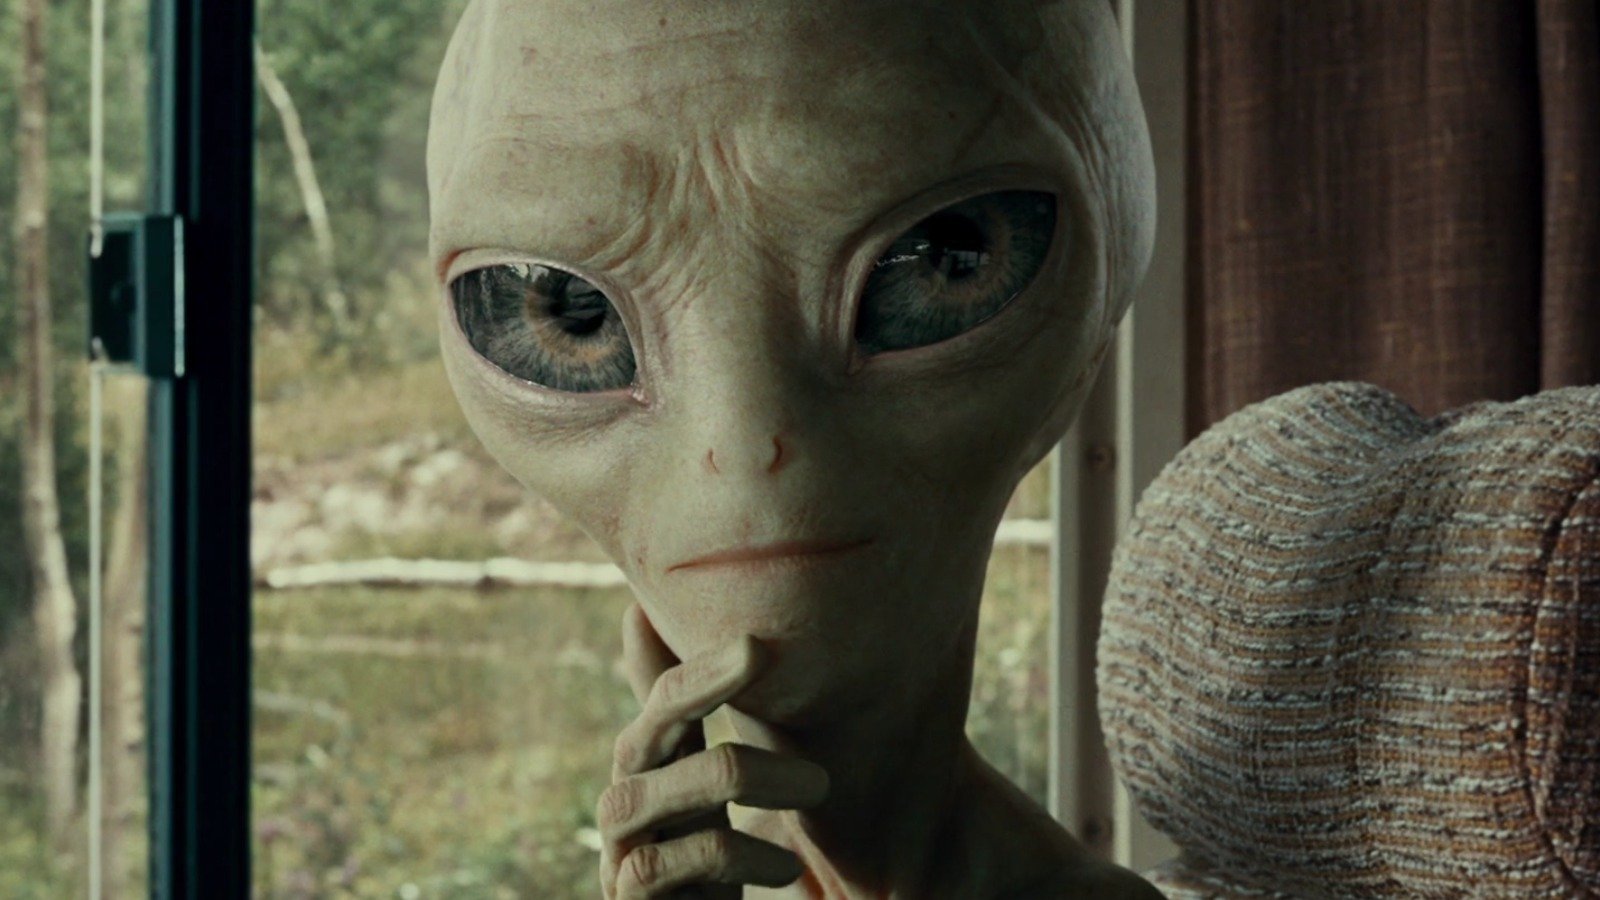 Steven Spielberg's Cameo In The Simon Pegg Alien Comedy Paul Was His Idea